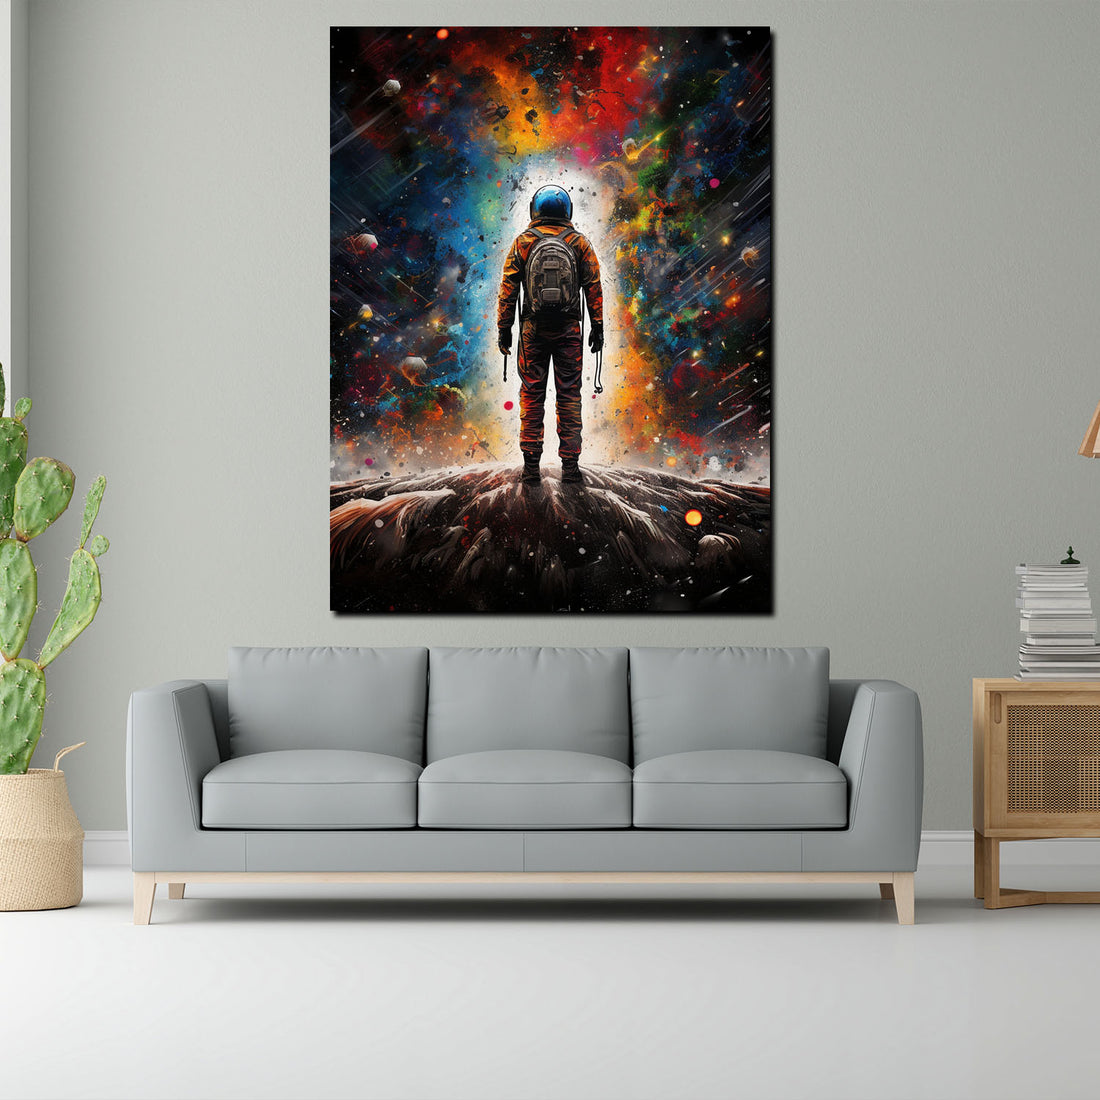 Wandbild abstrakte Kunst Astronaut, Pop Art Galaxie